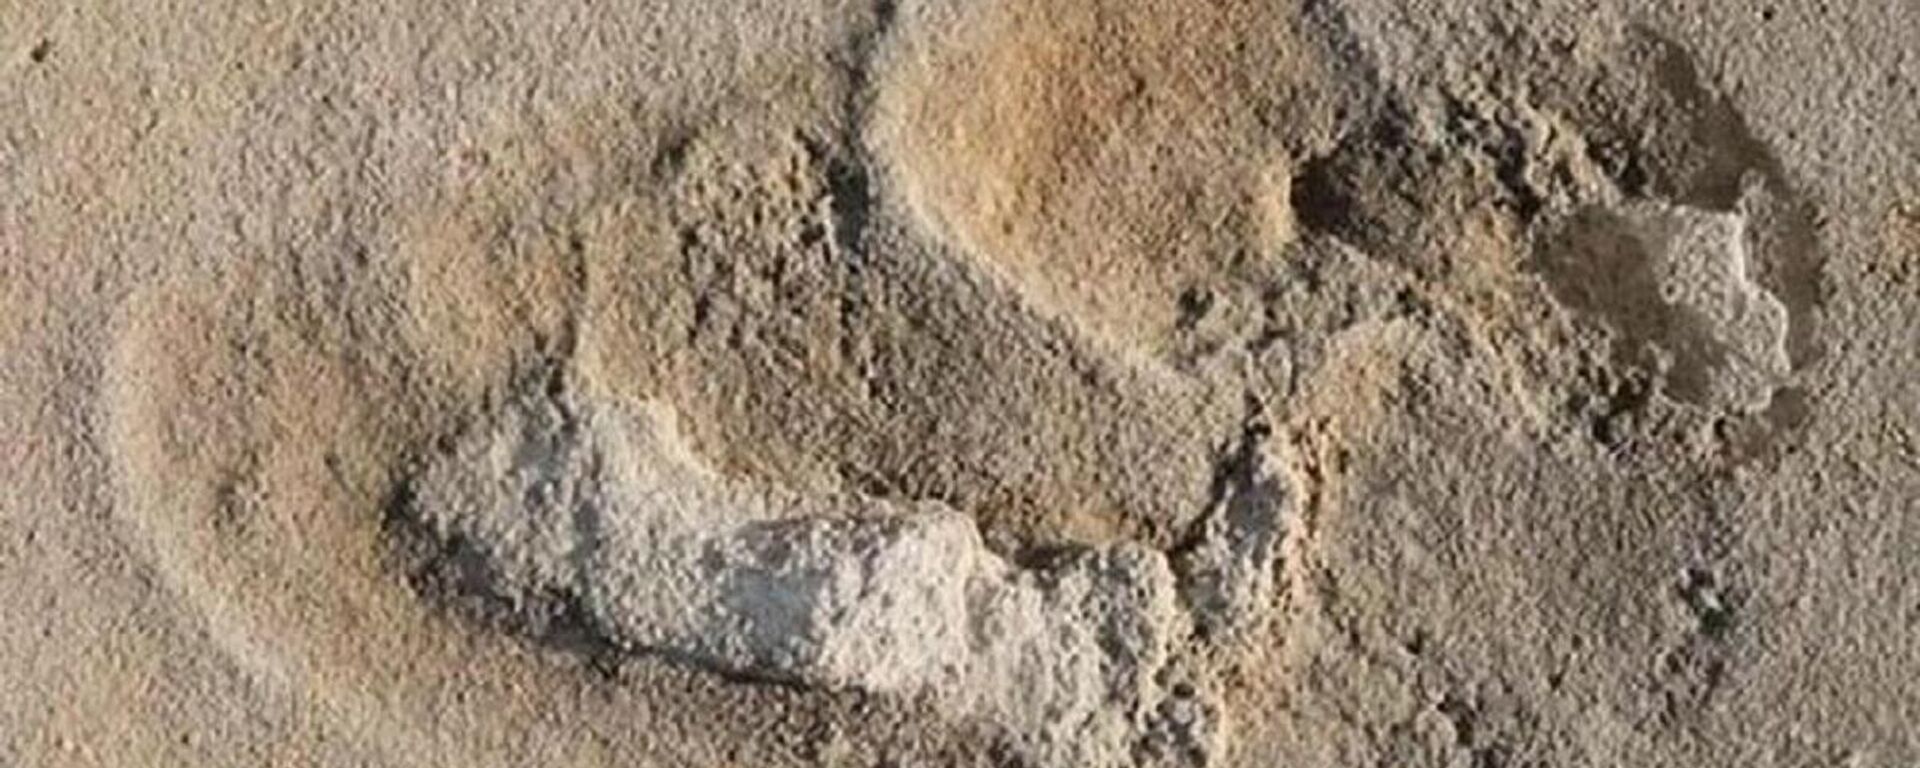 Önceki yıllarda Yunanistan'ın Girit Adası'nda keşfedilen 6 milyon yıllık ayak izlerinin insana benzer bir ayağa ait en eski izler oldukları tahmin ediliyor. - Sputnik Türkiye, 1920, 14.10.2021